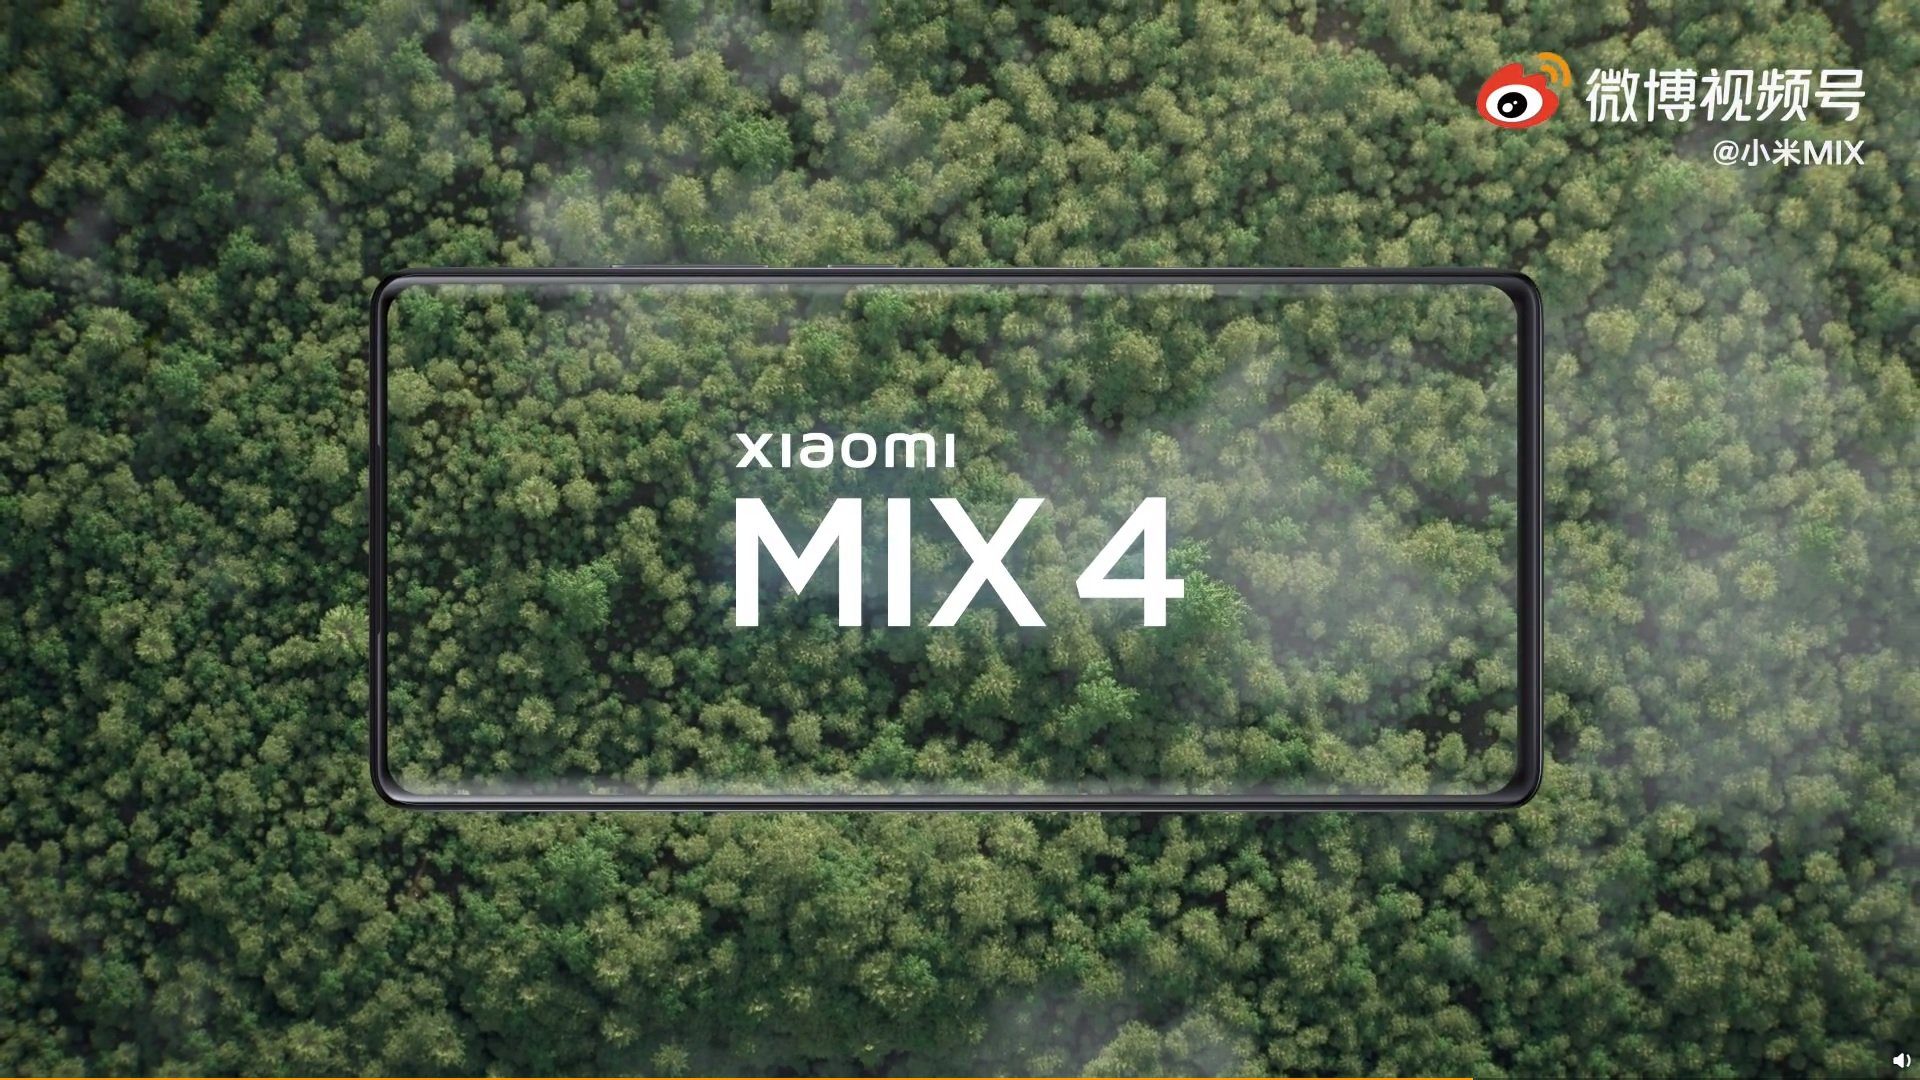 Xiaomi Mi MIX 4 (endlich!) Offiziell. Dies ist das erste Xiaomi-Smartphone mit einer Kamera unter dem Bildschirm 135